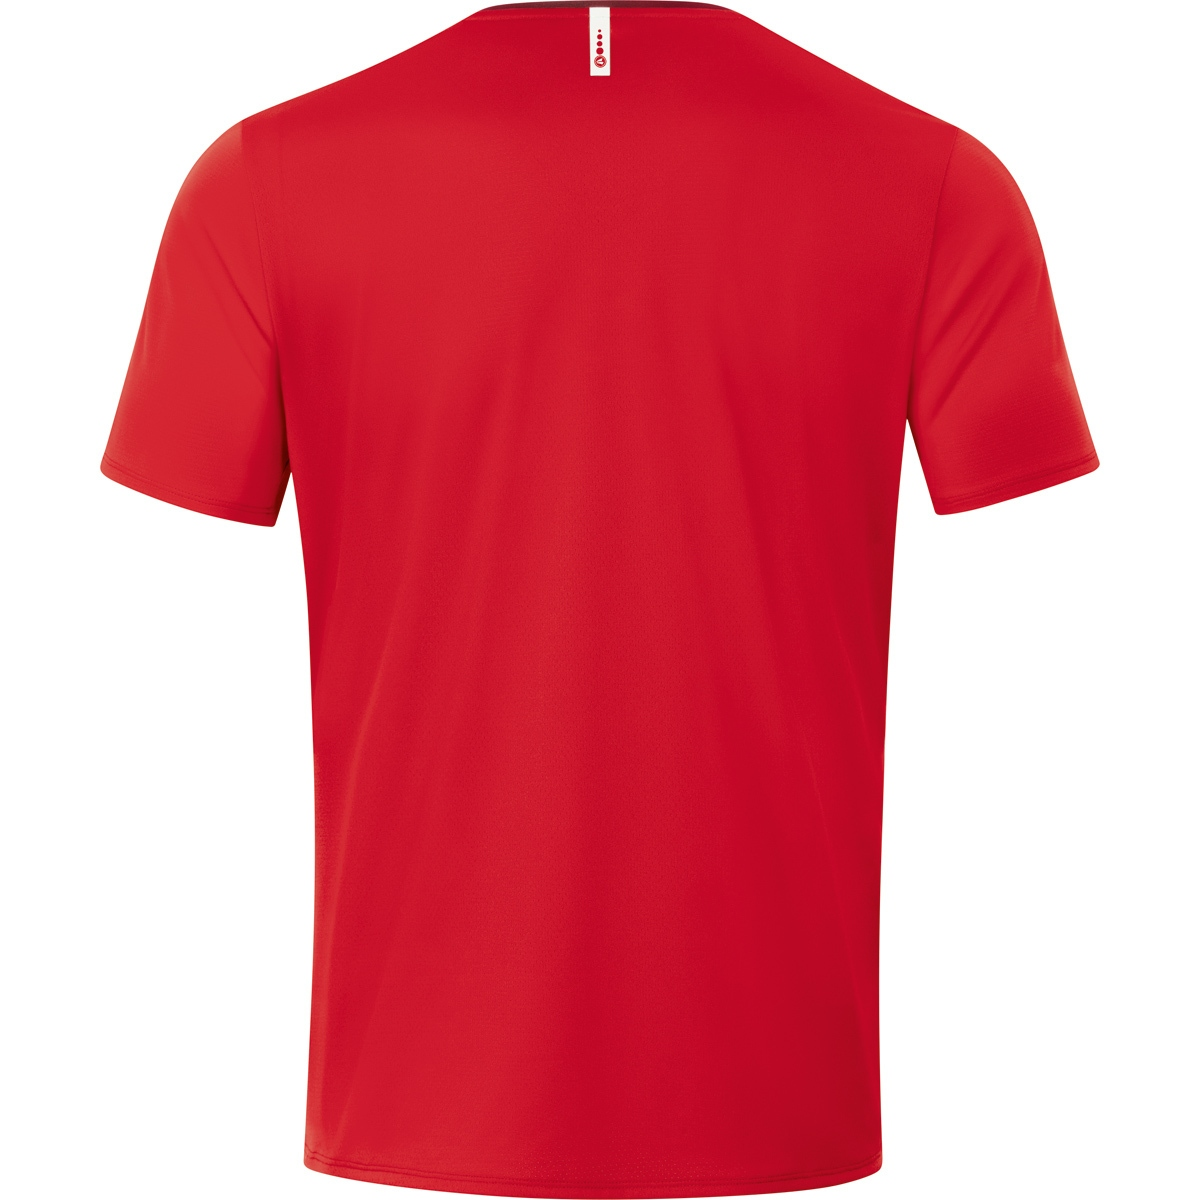 6120 JAKO rot/weinrot, Champ Kinder, Gr. 2.0 T-Shirt 116,